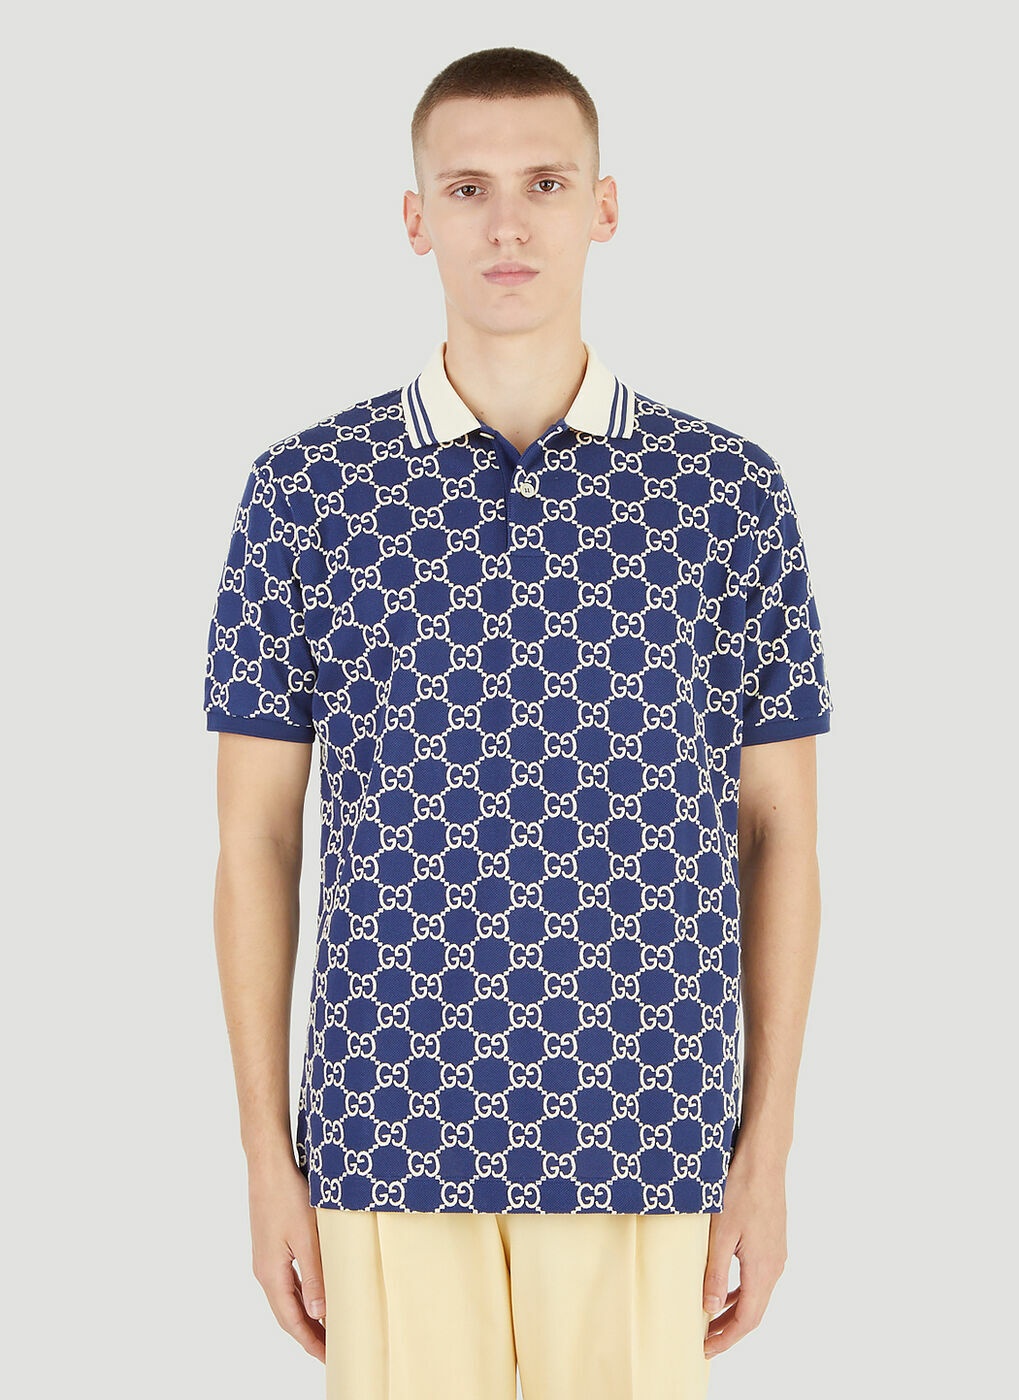 GG Supreme Polo Shirt in Blue Gucci